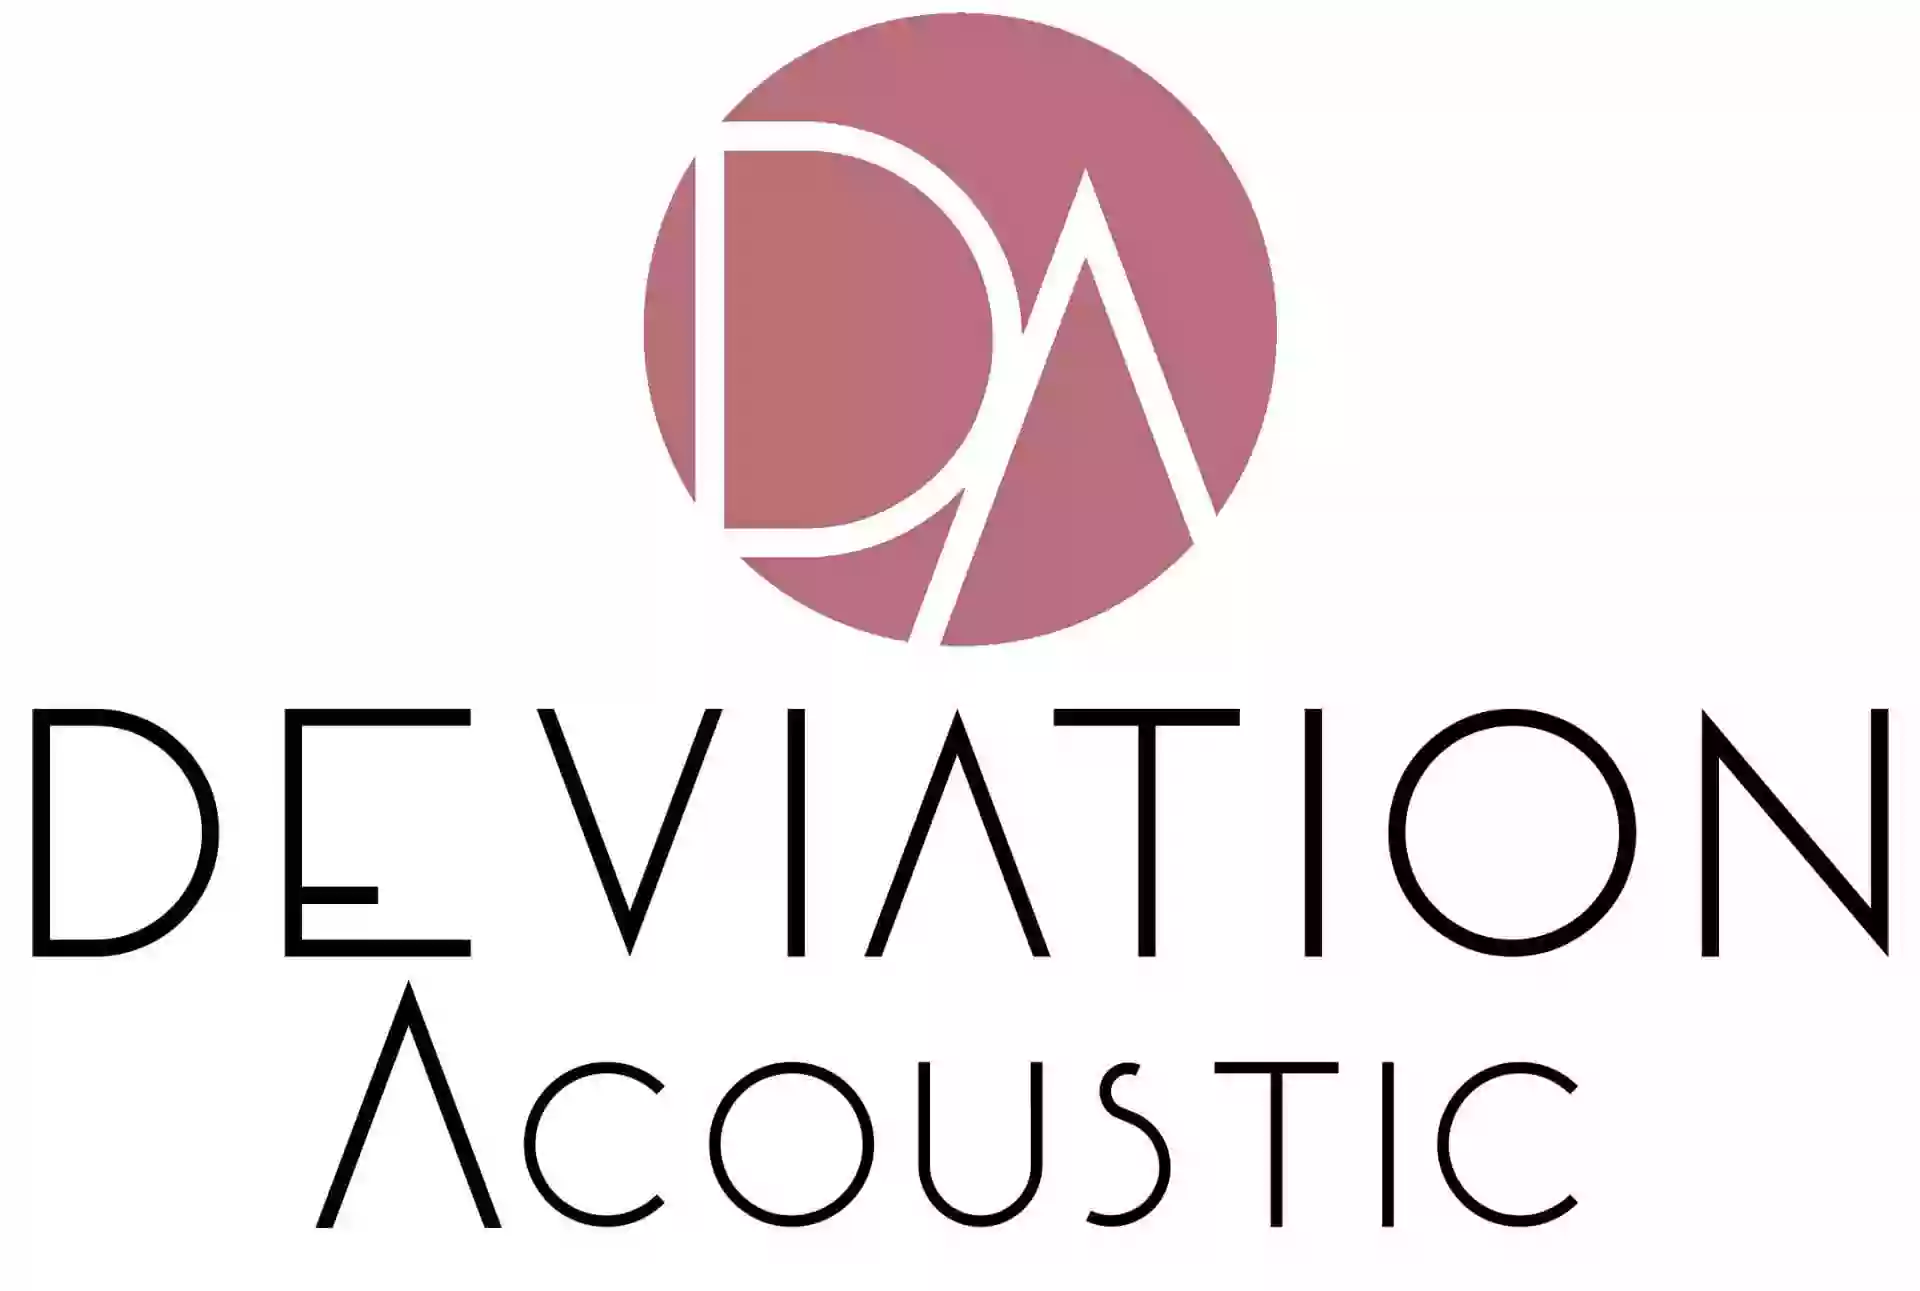 Deviation Acoustic